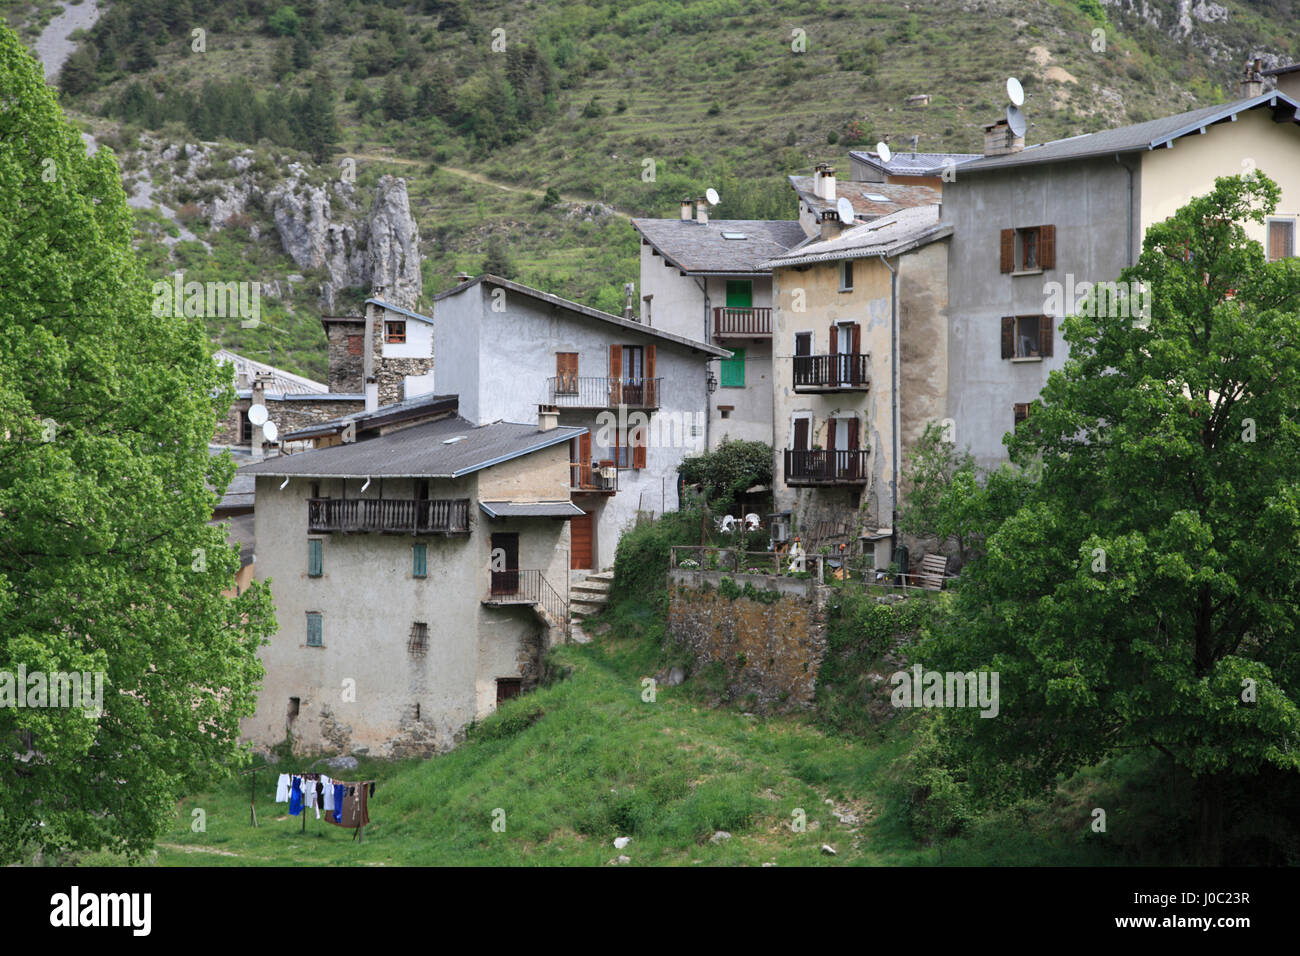 La aldea de La Brigue, Valle de roya, Alpes Maritimes, Cote d'Azur, Provenza, Francia Foto de stock